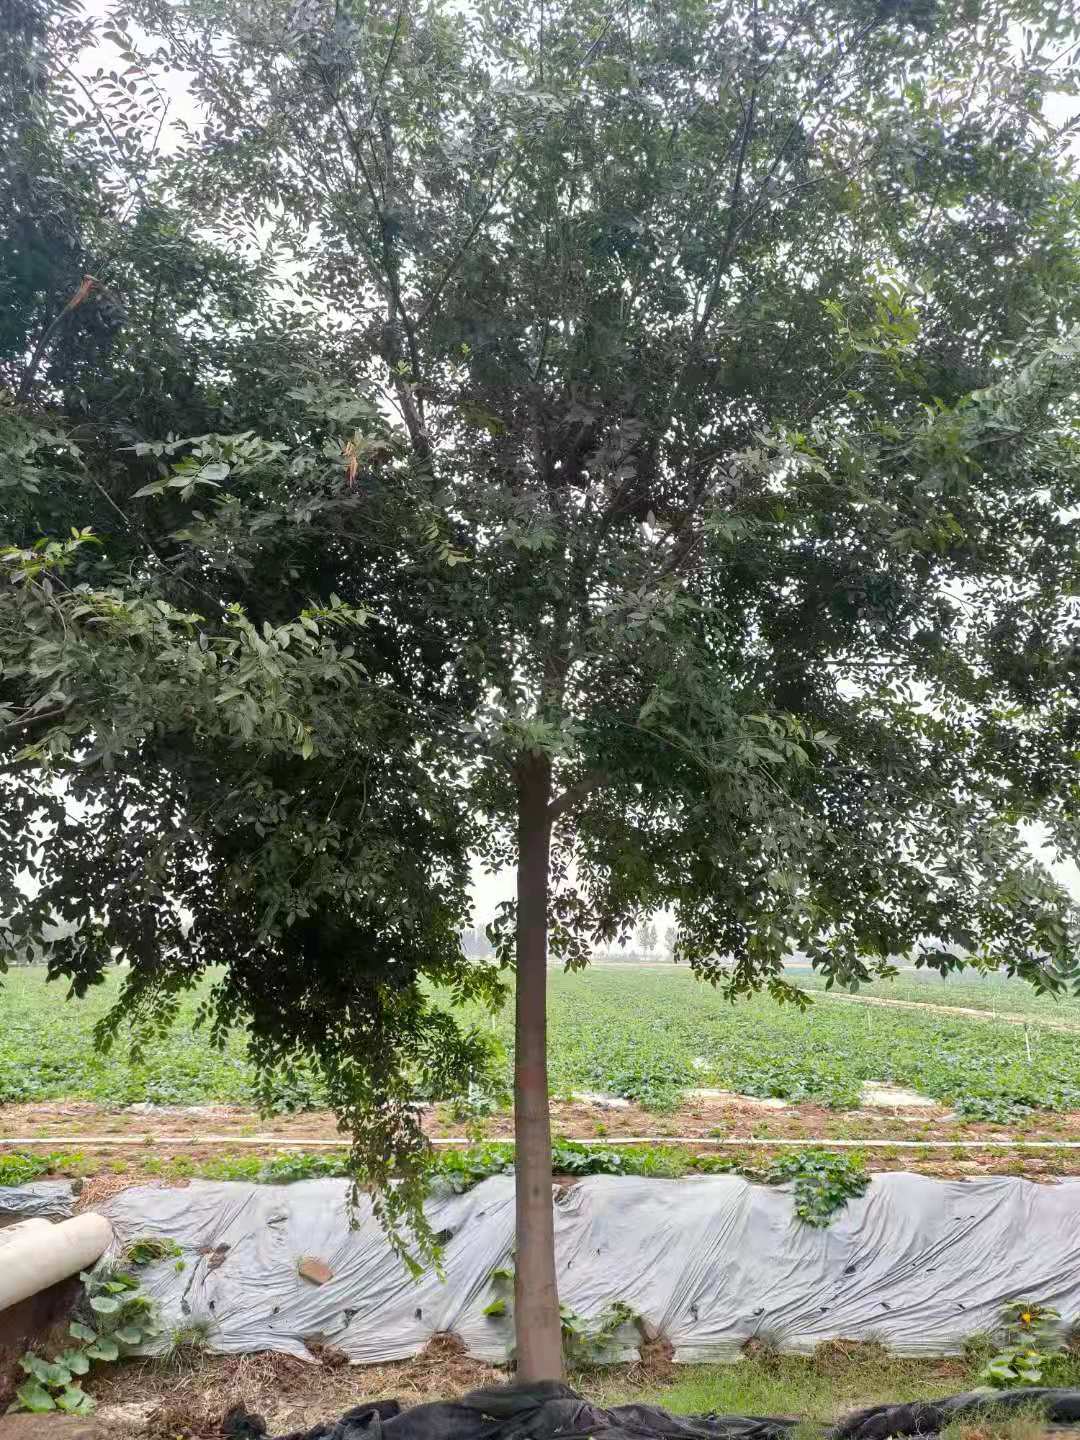 德州樸樹基地 樸樹培育基地